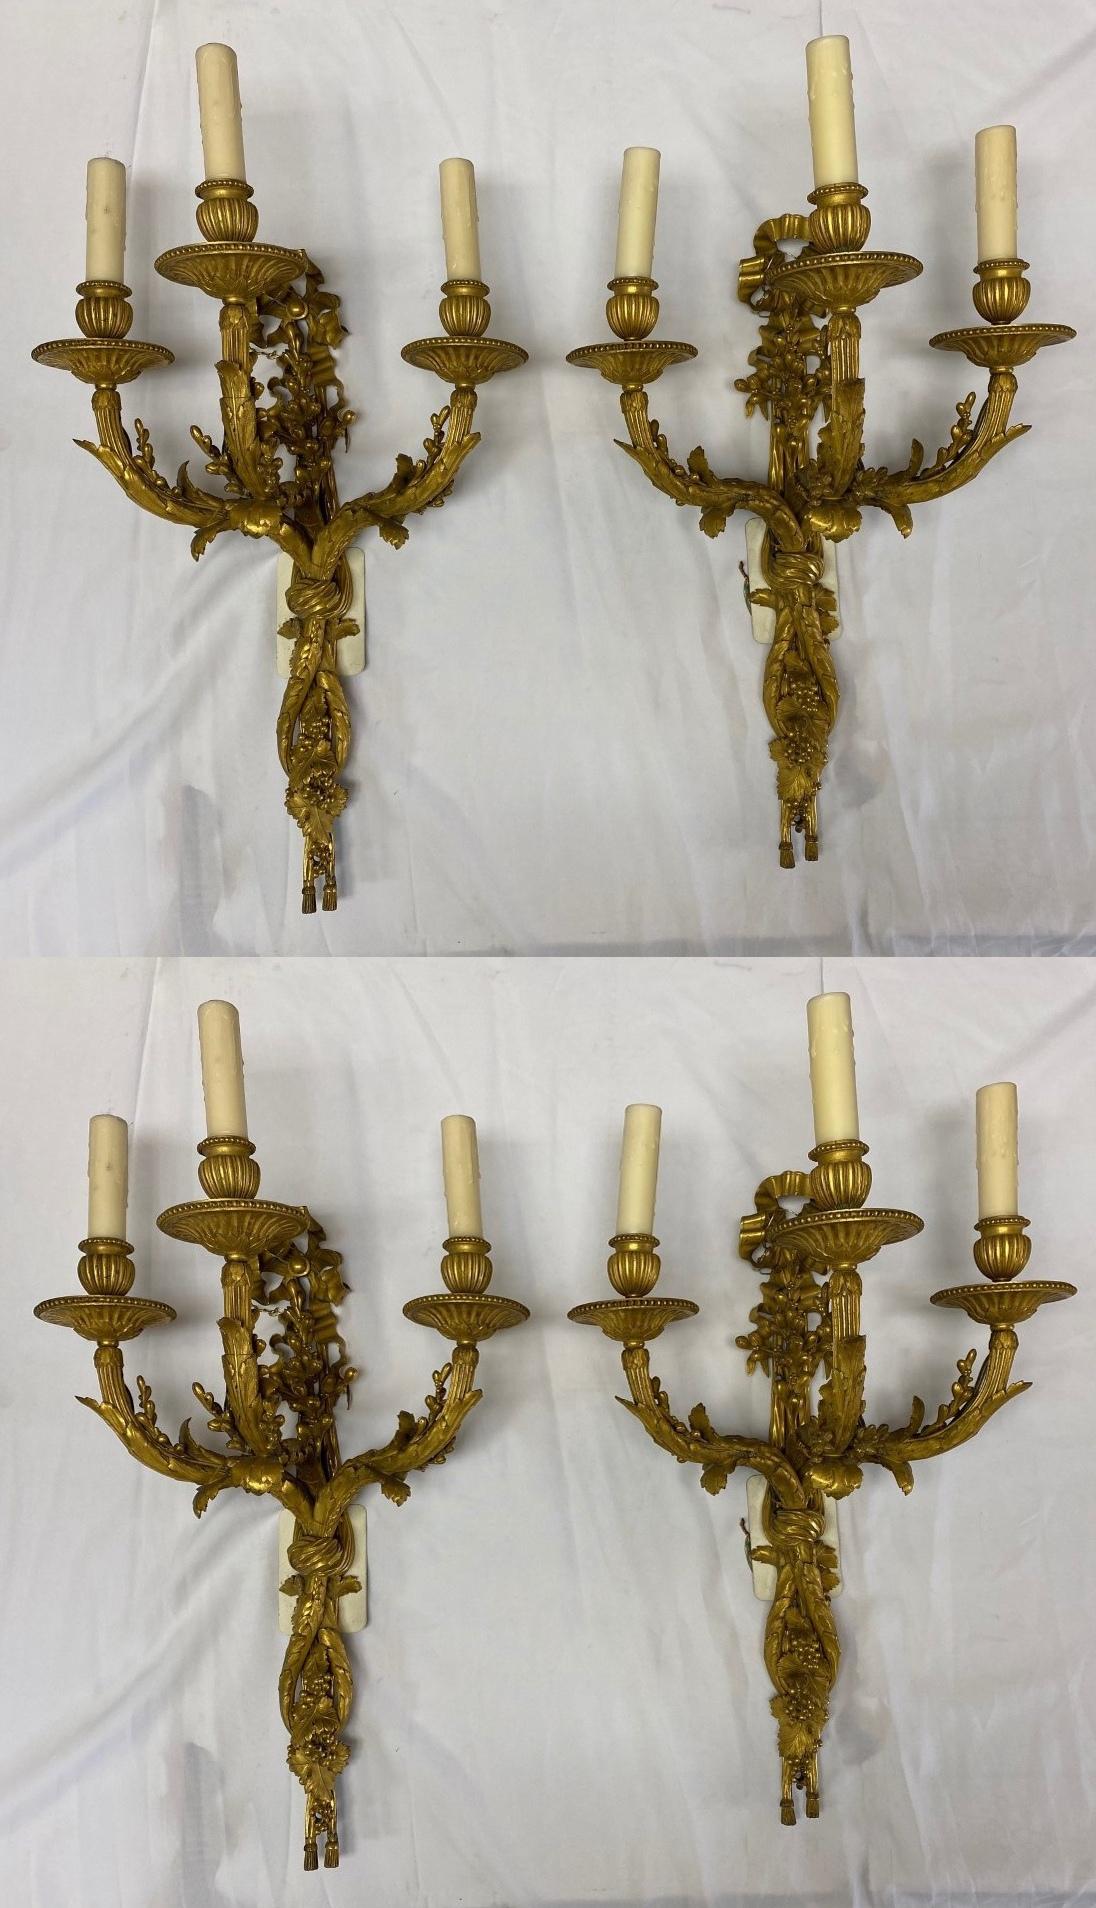 Exquise série française du 19ème siècle de 4 appliques à deux lumières en bronze doré avec des manchons de bougie en cire faits à la main.
Fin du 19e siècle
Chacune est ornée d'un ruban et d'un motif de vigne tressée supportant trois bougies